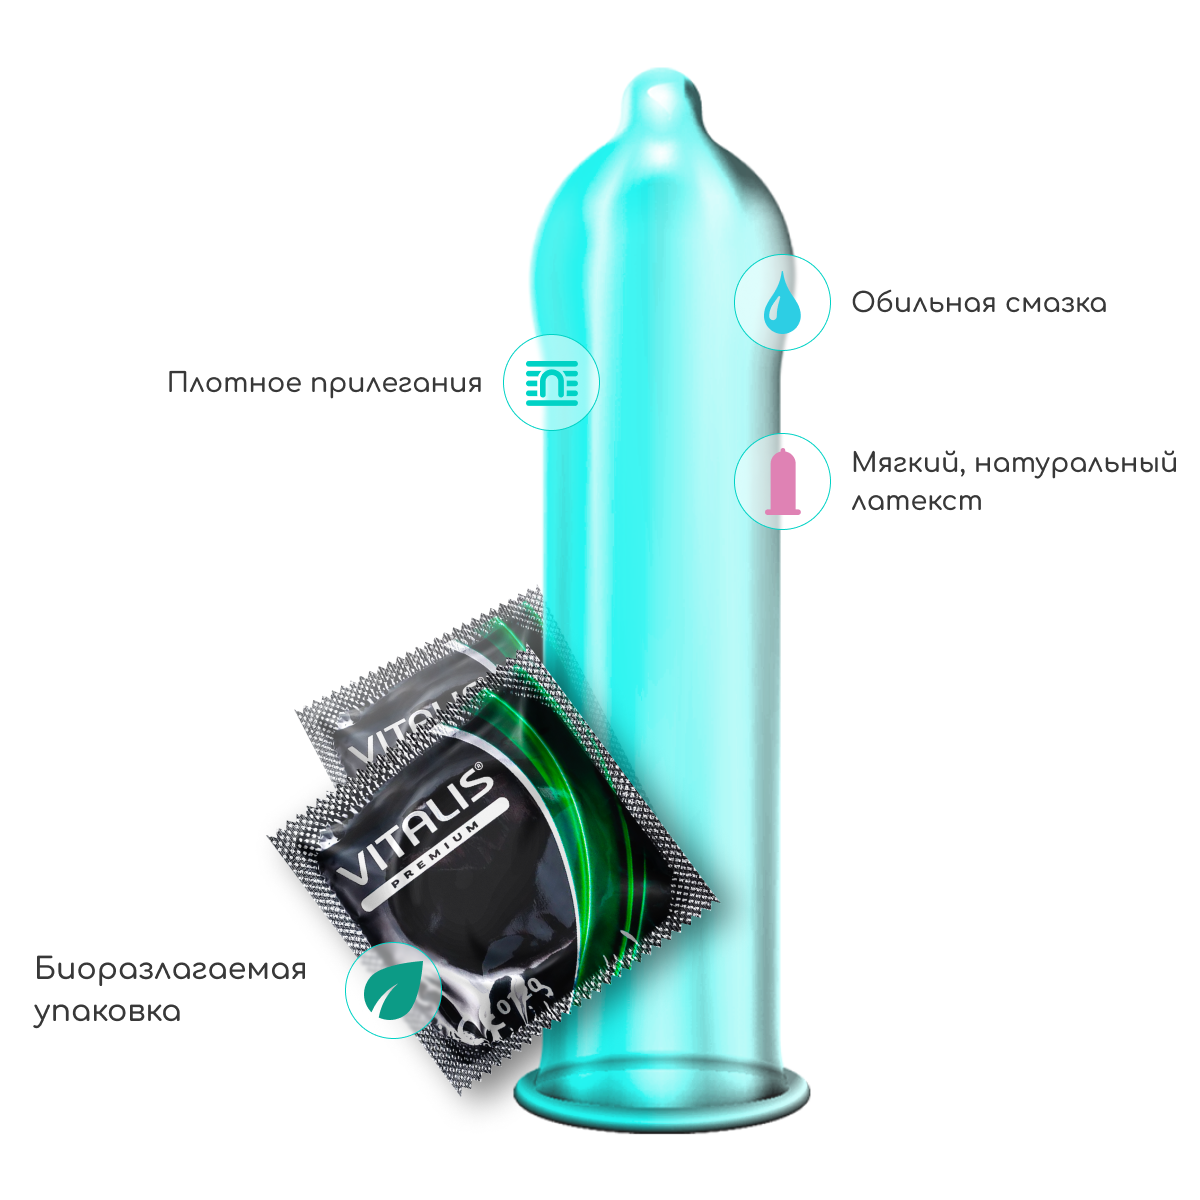 Презервативы анатомической формы Vitalis Premium, 3 шт